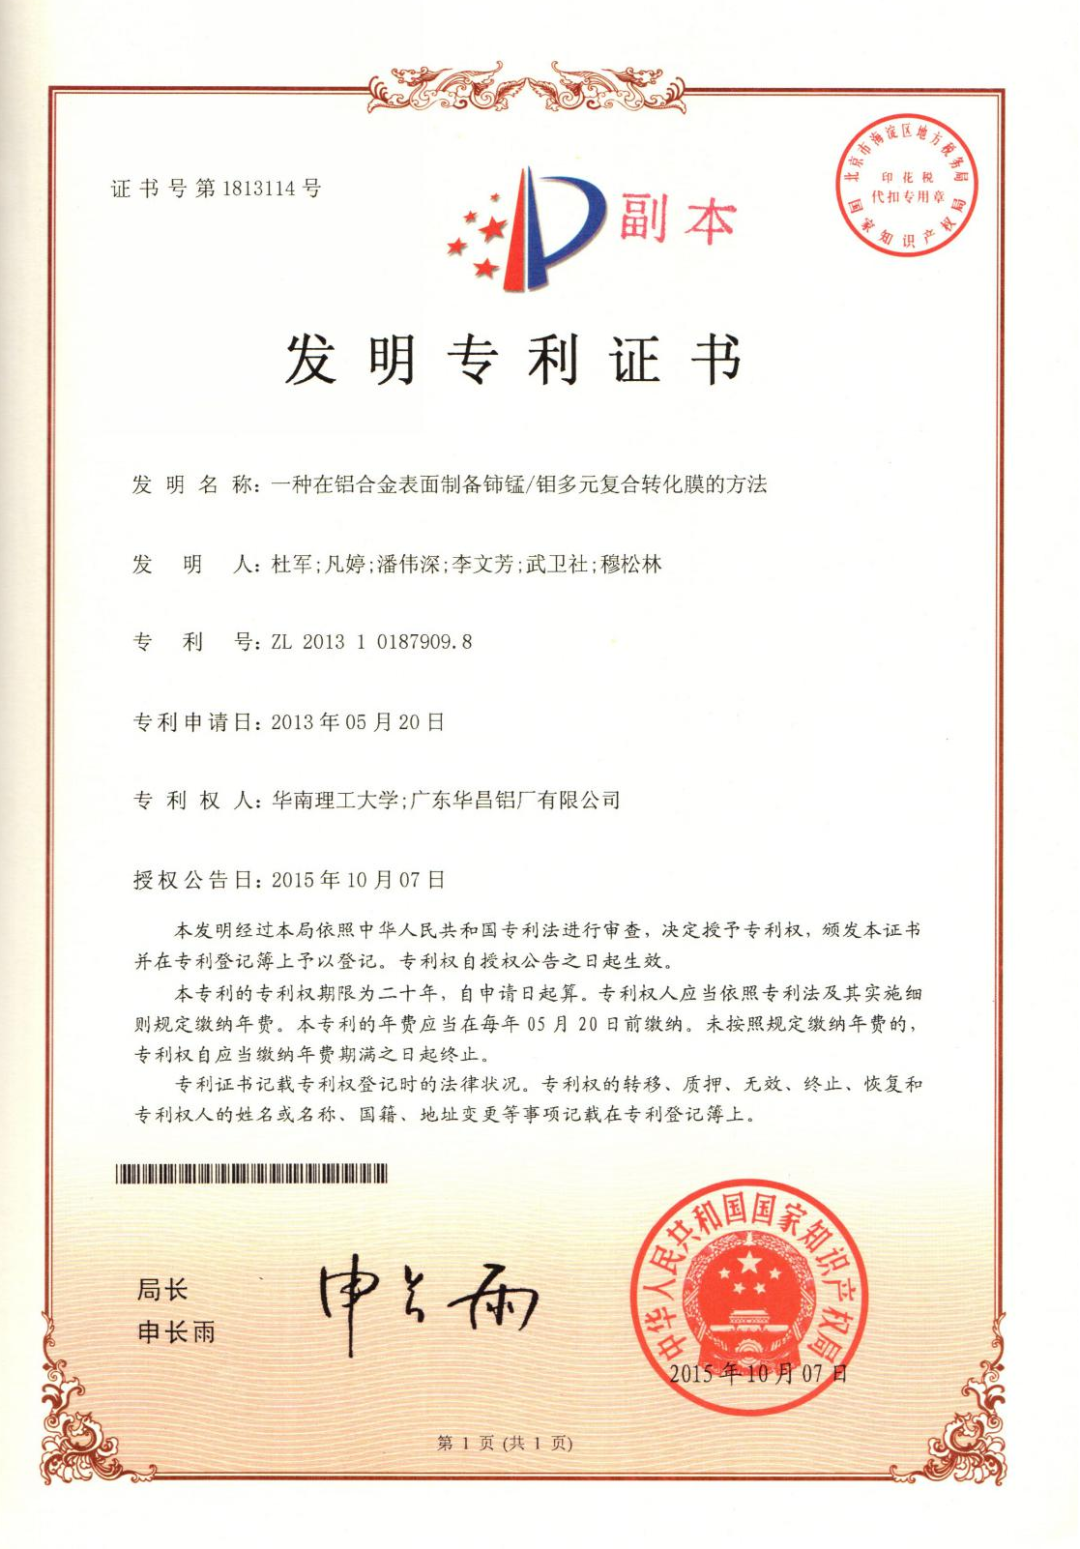 華昌集團1項發明專利榮獲第二十四屆中國專利獎“優秀獎”